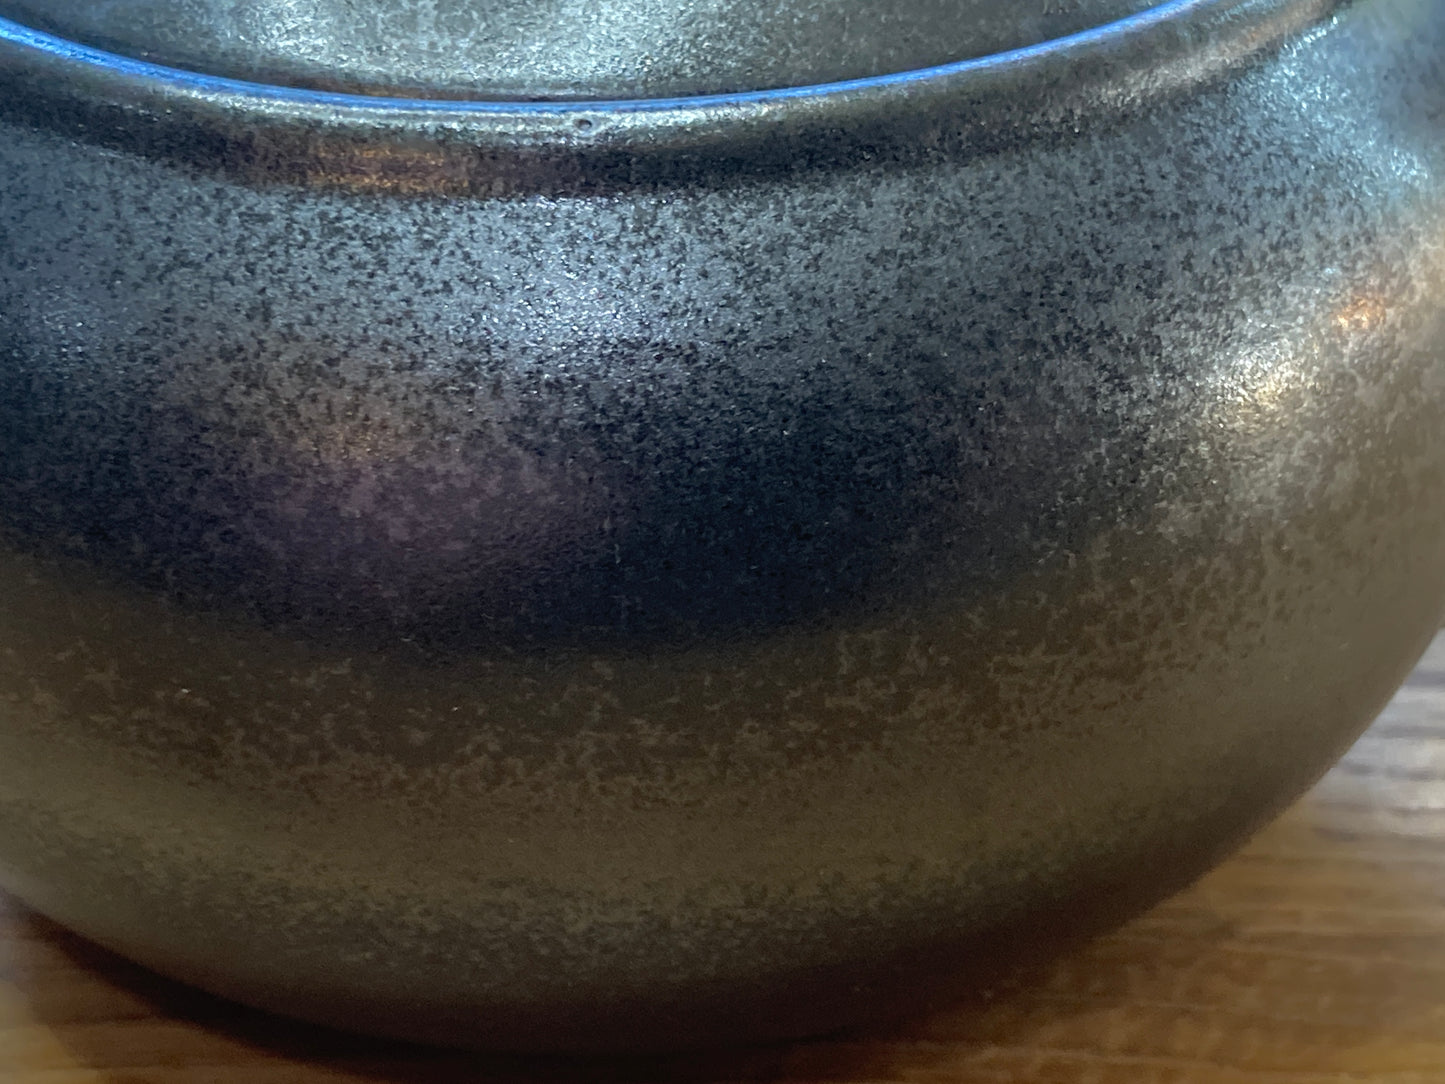 Tokoname Kyusu Tea Pot (260 cc, silver tint)